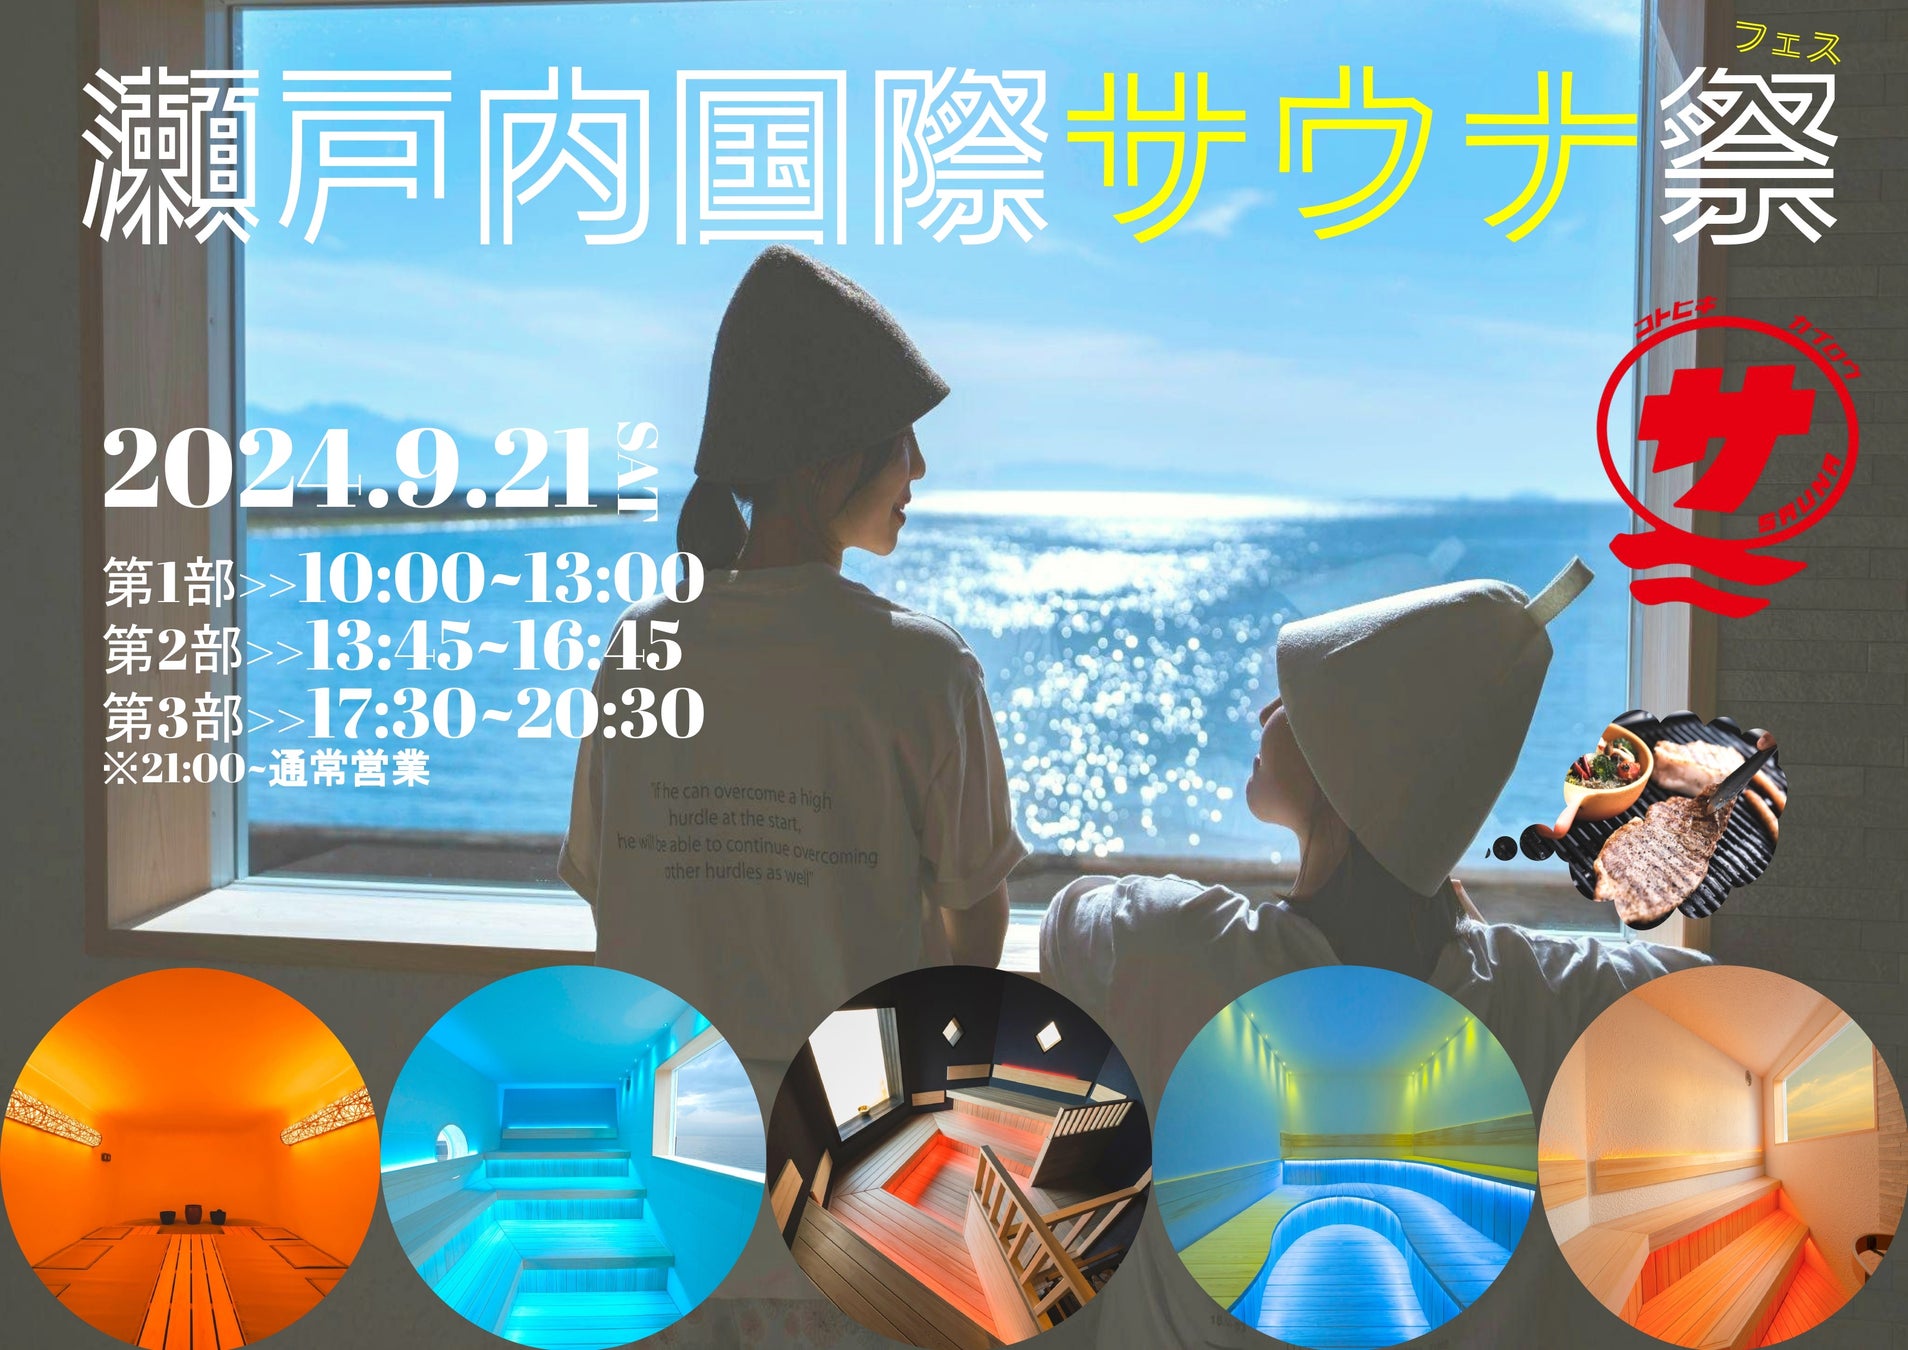 【日本最大級】『瀬戸内国際サウナ祭』が開催決定！【13種のサウナや7種の水風呂、”37分連続クレイジー熱波”に”37cmのどでかサウナ飯”も楽しめるサウナフェス】＠9月21日（土）